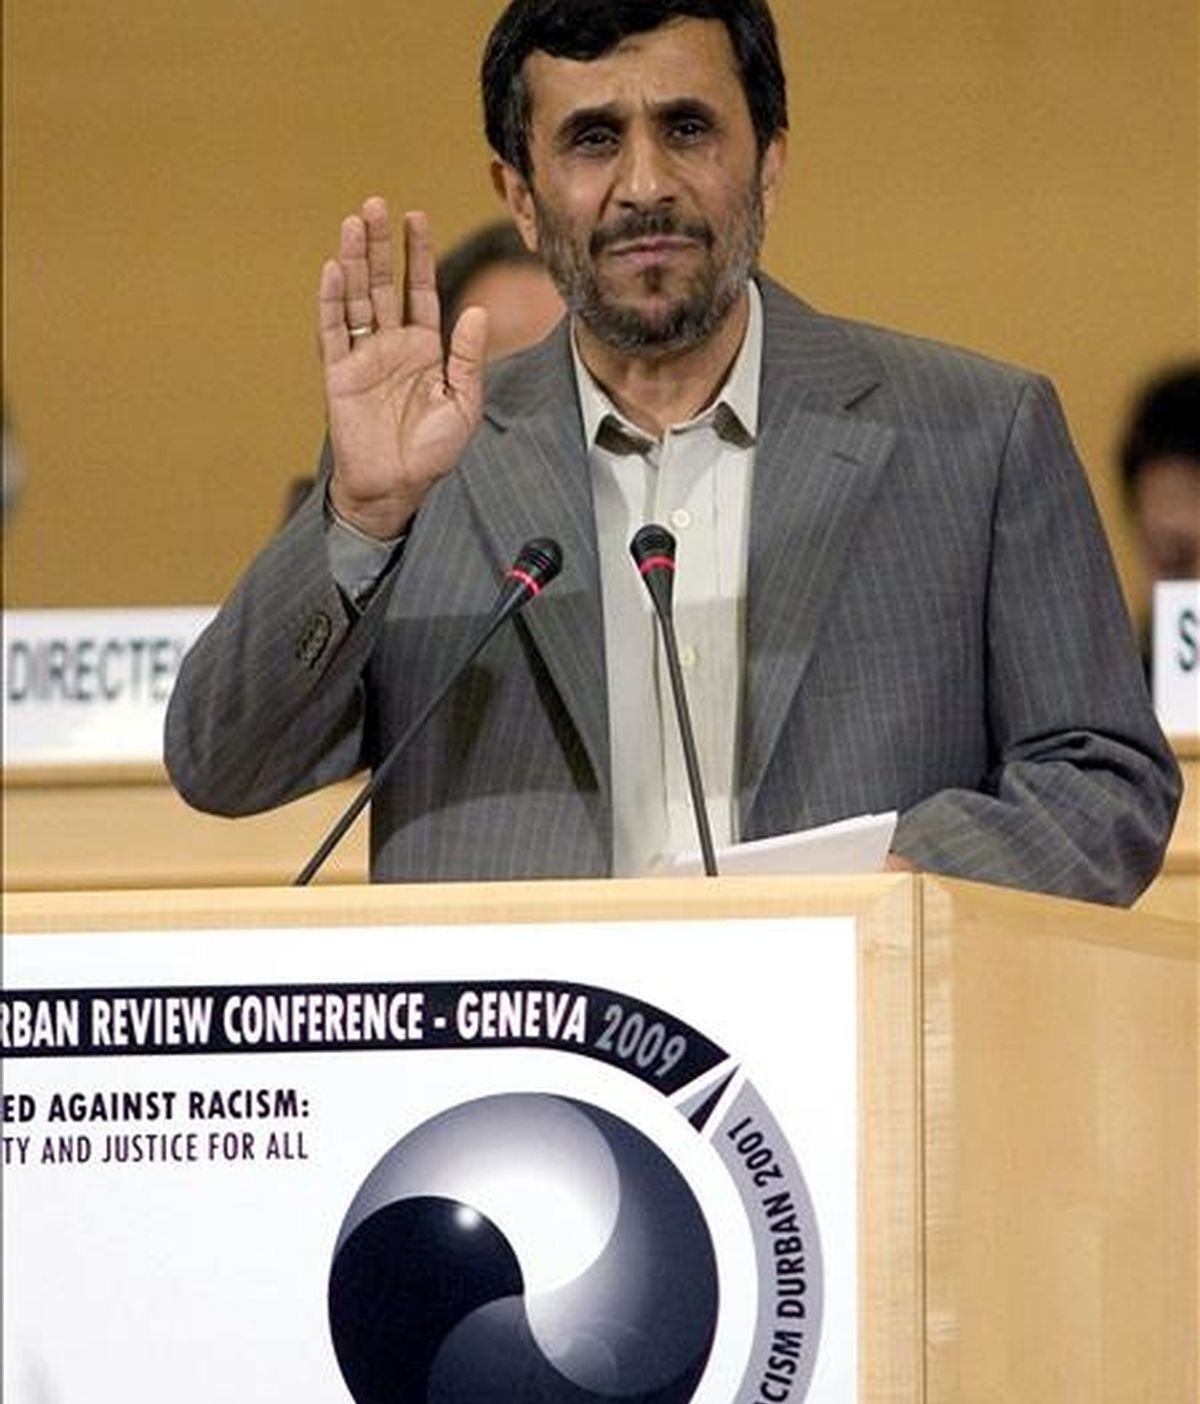 El presidente iraní, Mahmud Ahmadineyad, durante su discurso ante la Conferencia sobre Racismo de la ONU. EFE